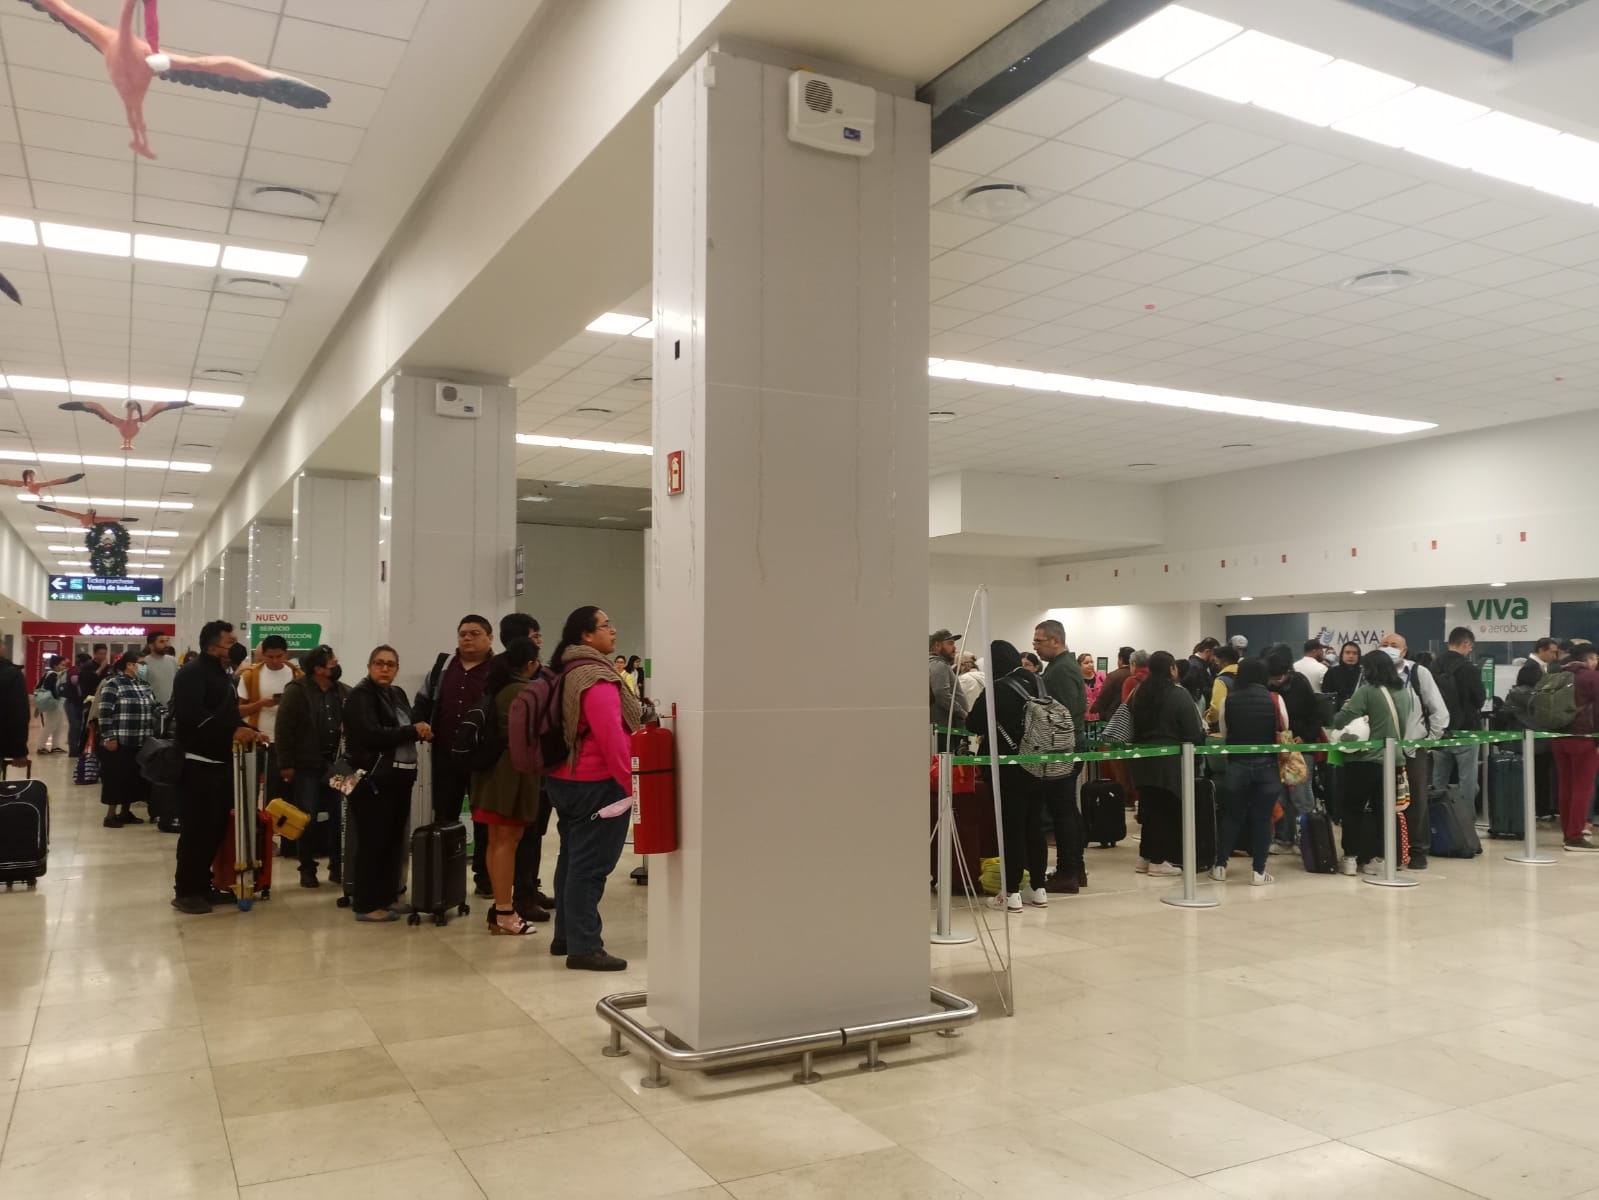 Continúan los retrasos por más de una hora en vuelos del aeropuerto de Mérida